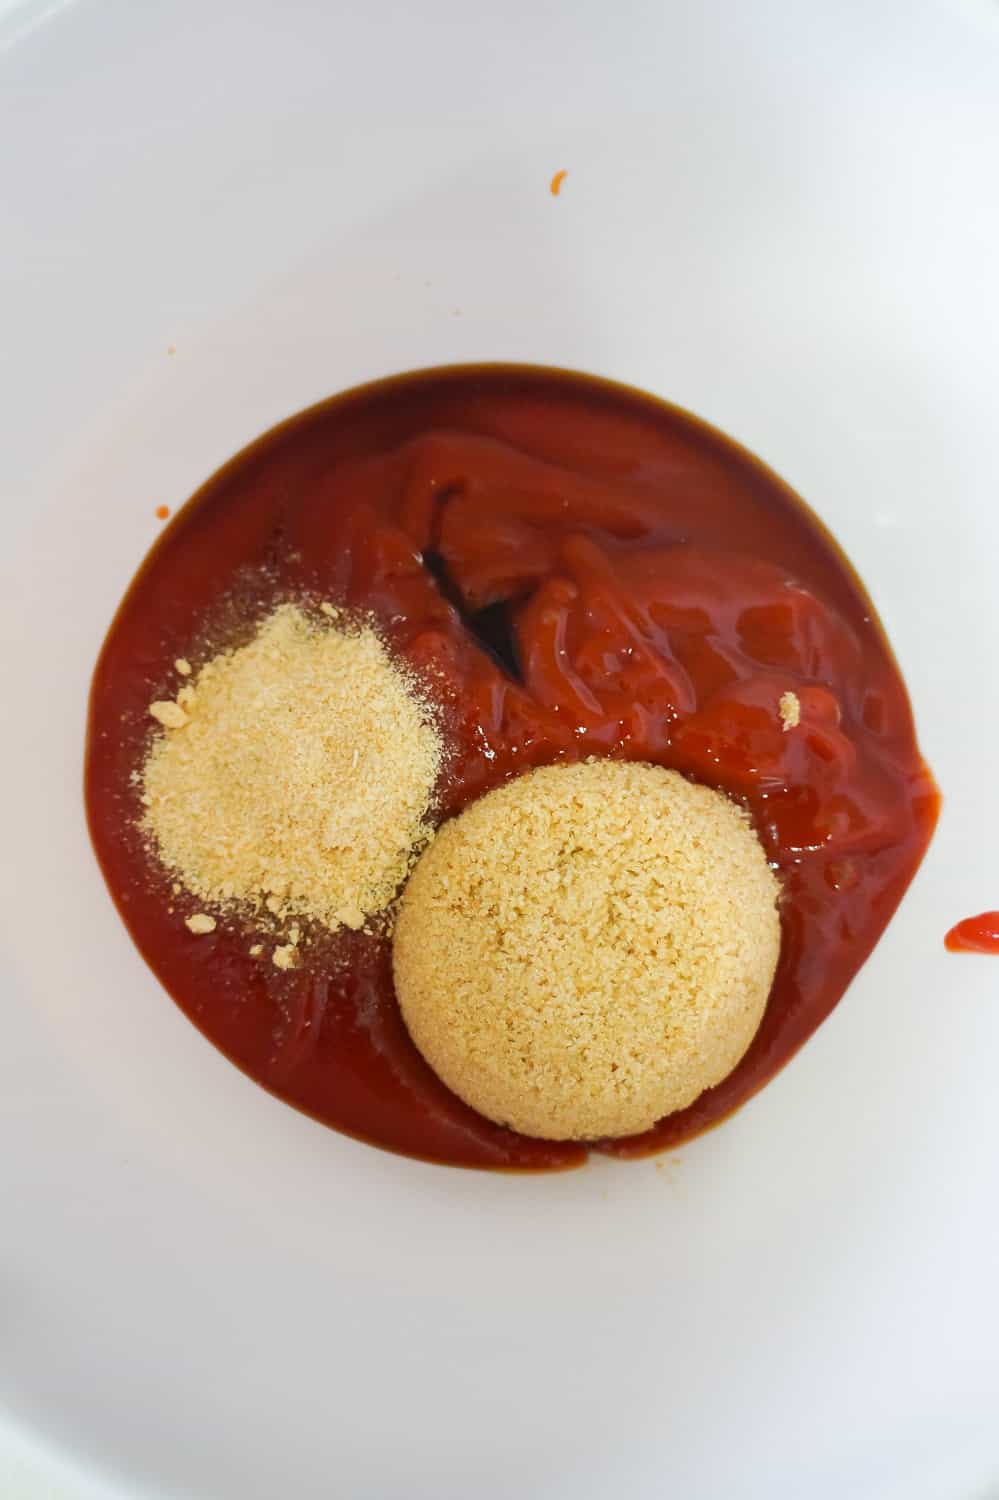 ketchup, brown sugar and onion powder in a mixing bowl